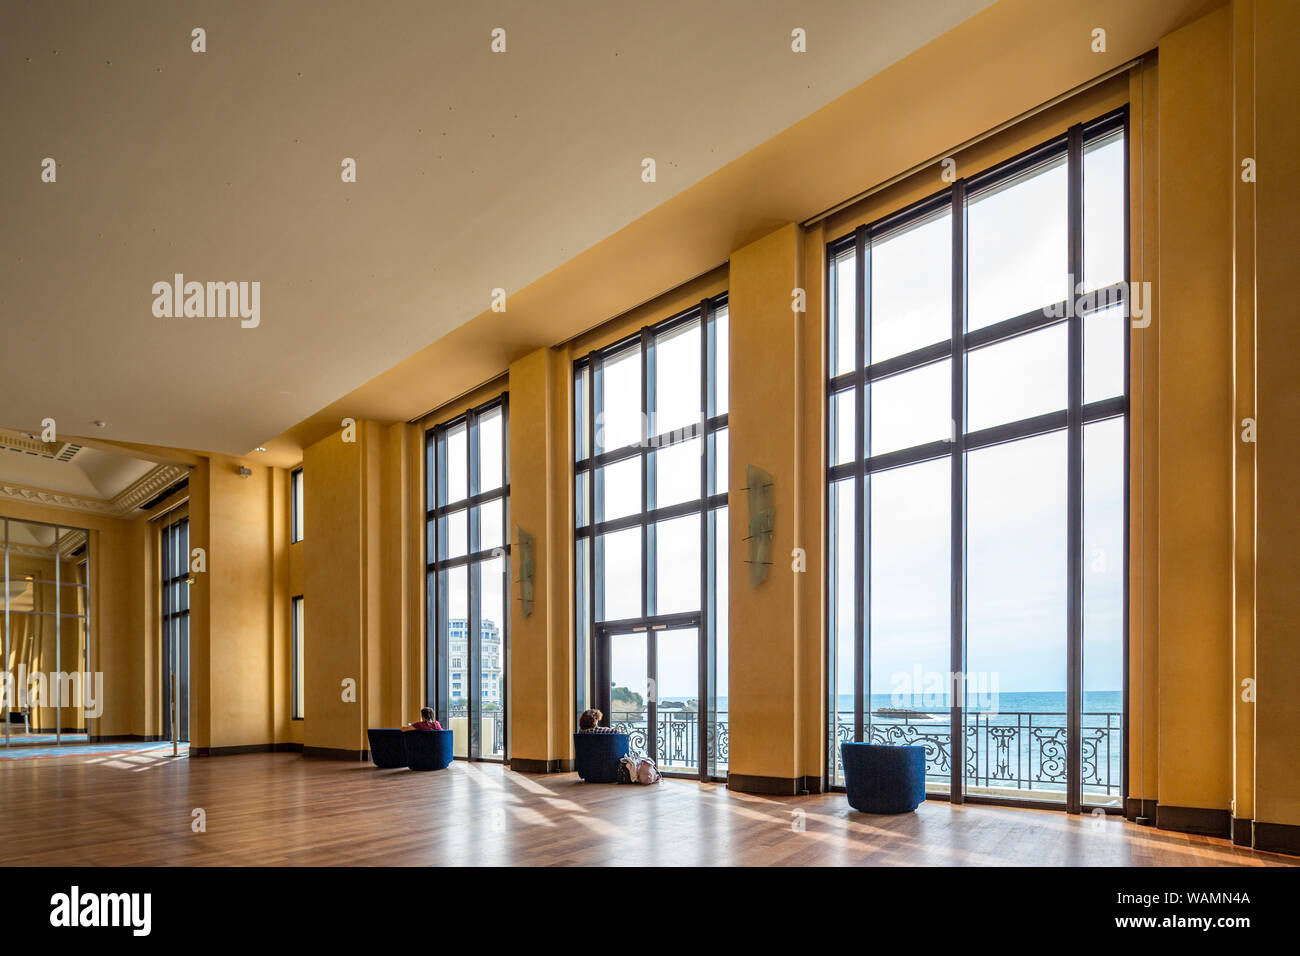 Das im Art déco-Stil, ein Blick auf die Botschafter' Zimmer in der Städtischen Casino von Biarritz (Atlantische Pyrenäen Aquitaine - Frankreich) Stockfoto